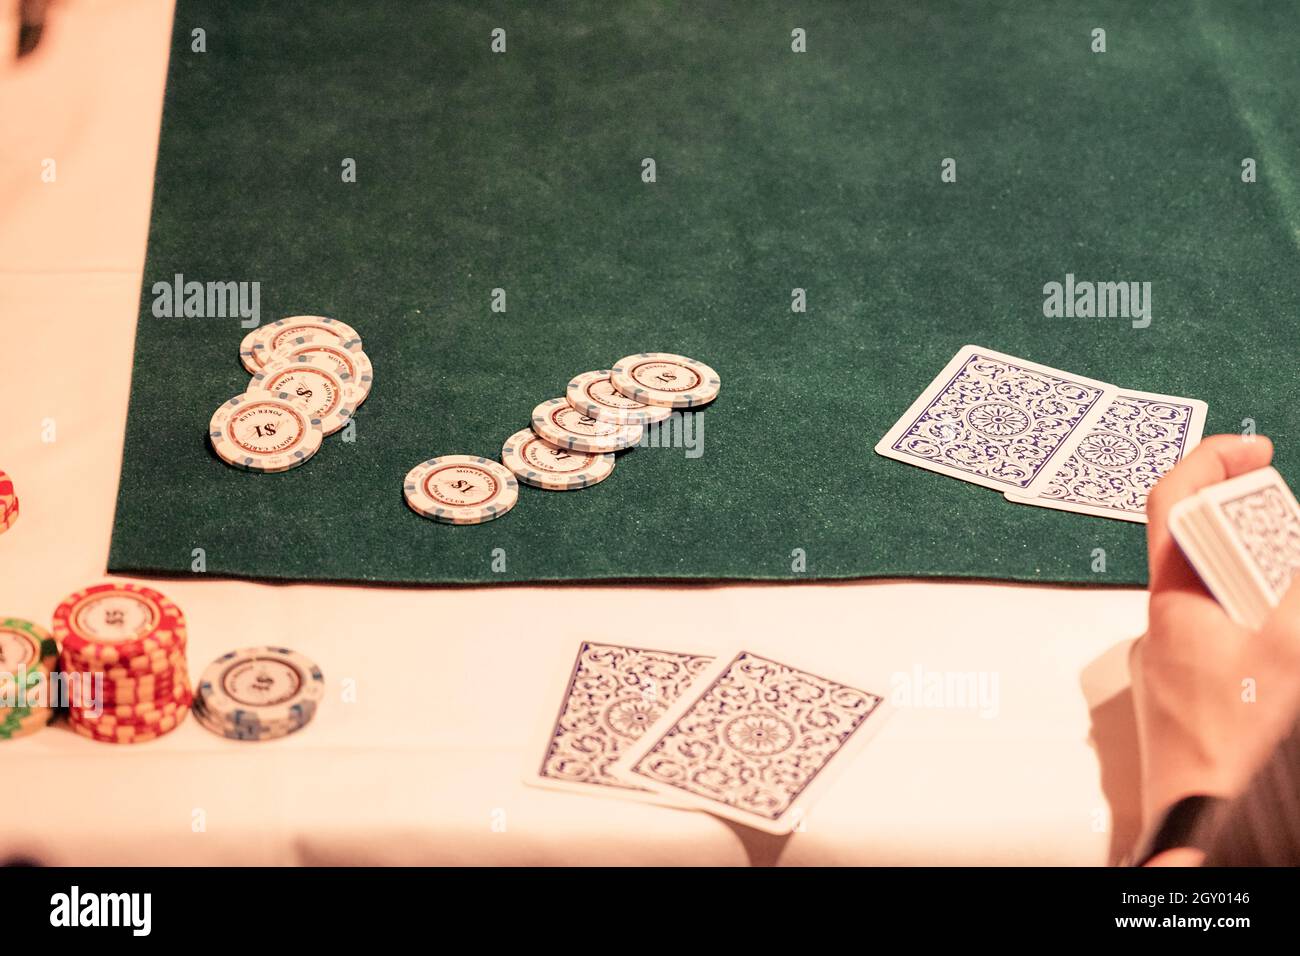 Image de Texas Holdem (poker). Lieu de tournage : zone métropolitaine de Tokyo Banque D'Images